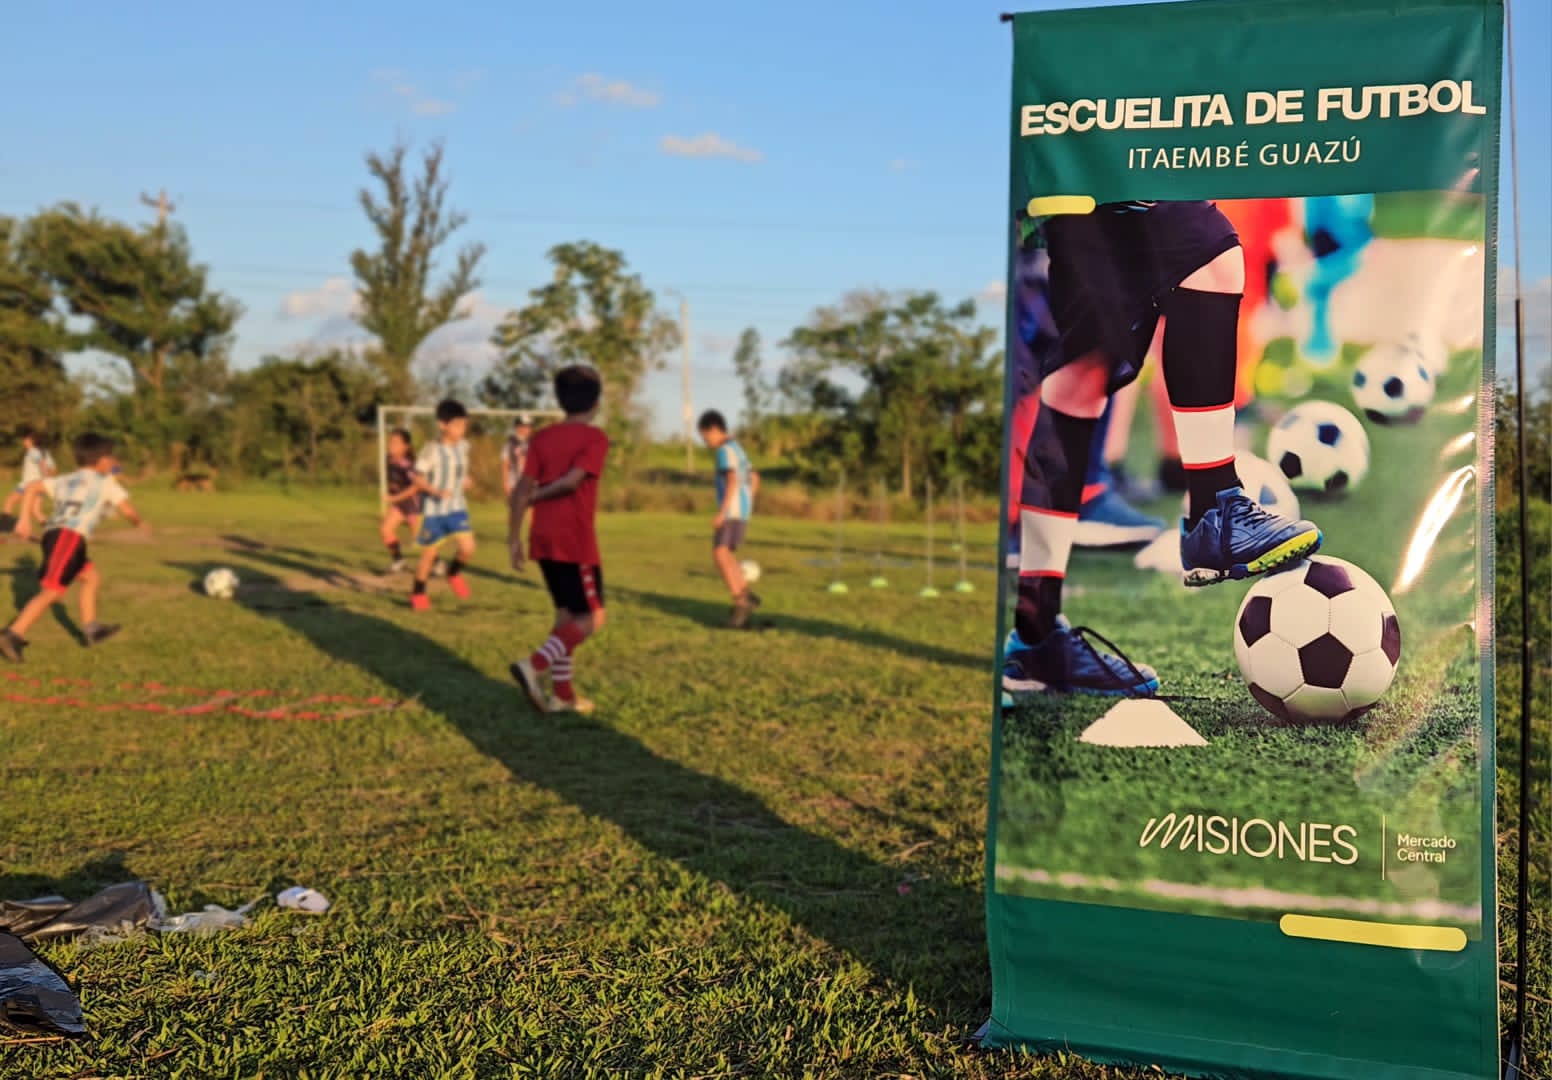 Comunidad de Itaembé Guazú destaca la puesta en funcionamiento de la Escuelita de Fútbol del Mercado Central imagen-6